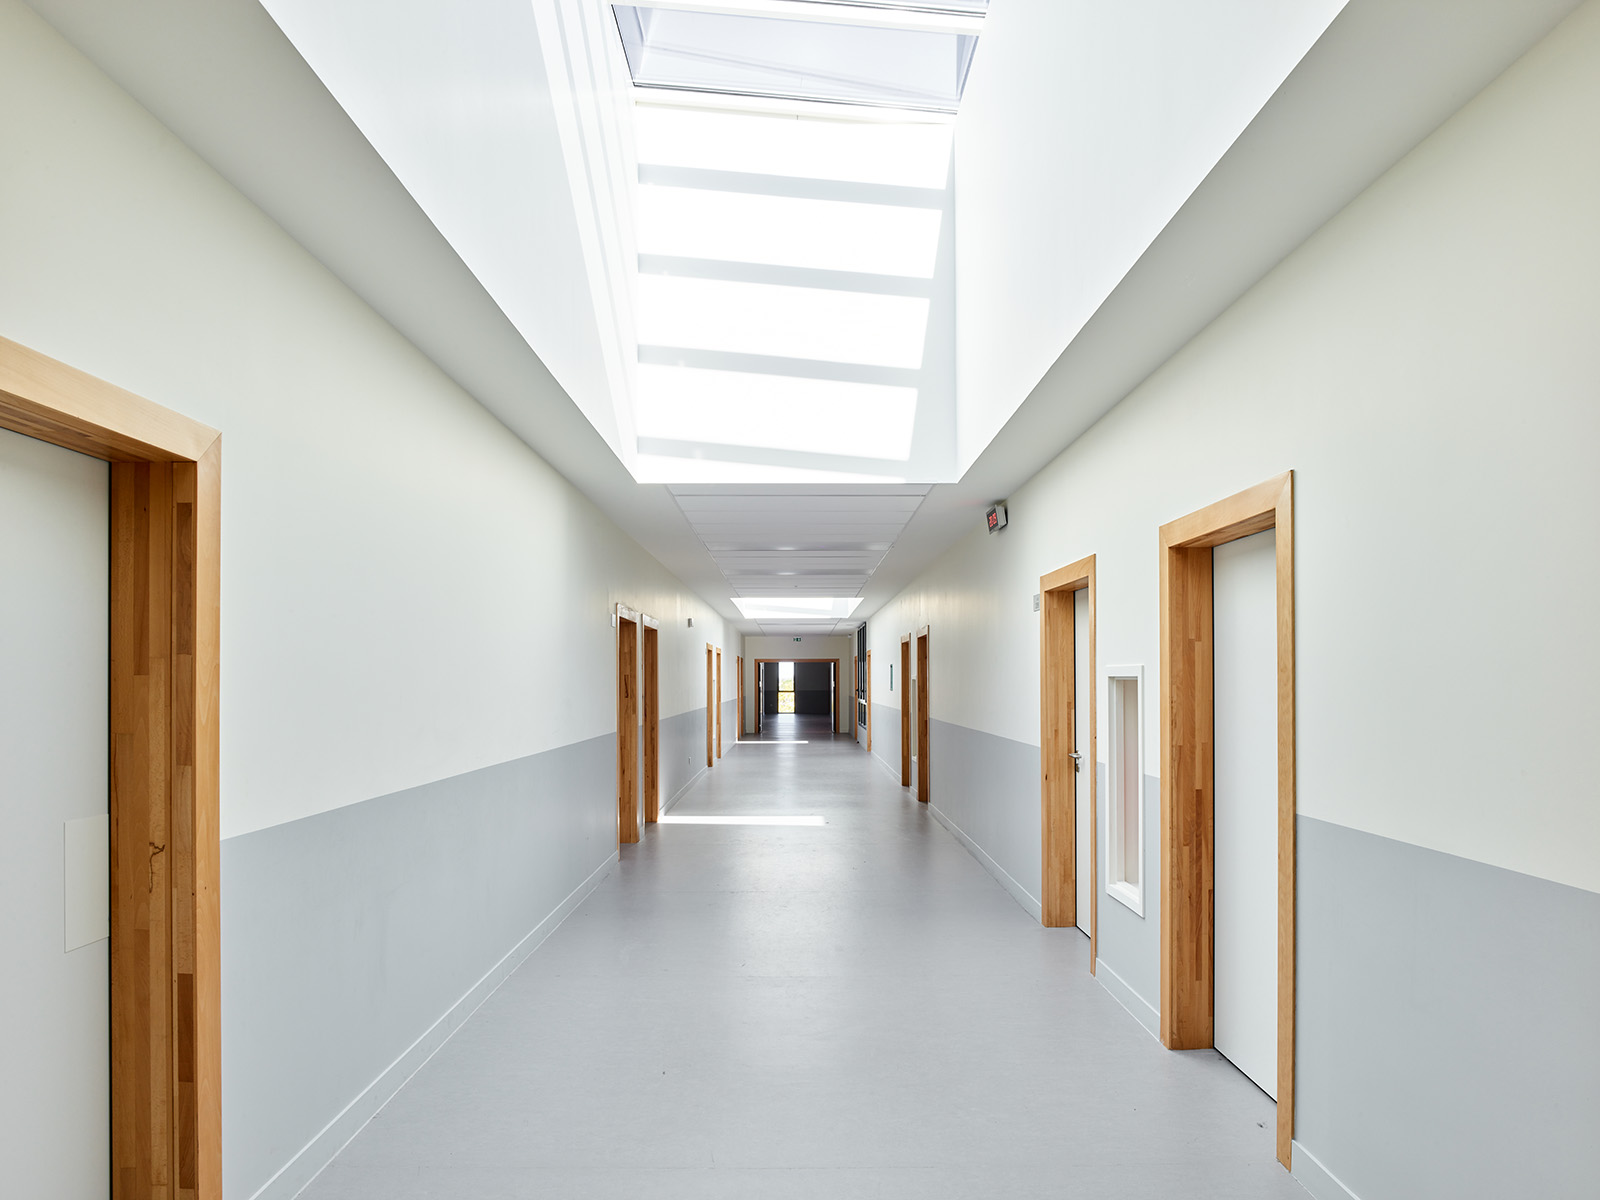 Photographie face à un couloir blanc et partie basse avec le sol gris clair, enfilade de portes menuiserie bois, en hauteur des puits de lumière apporte de la luminosité